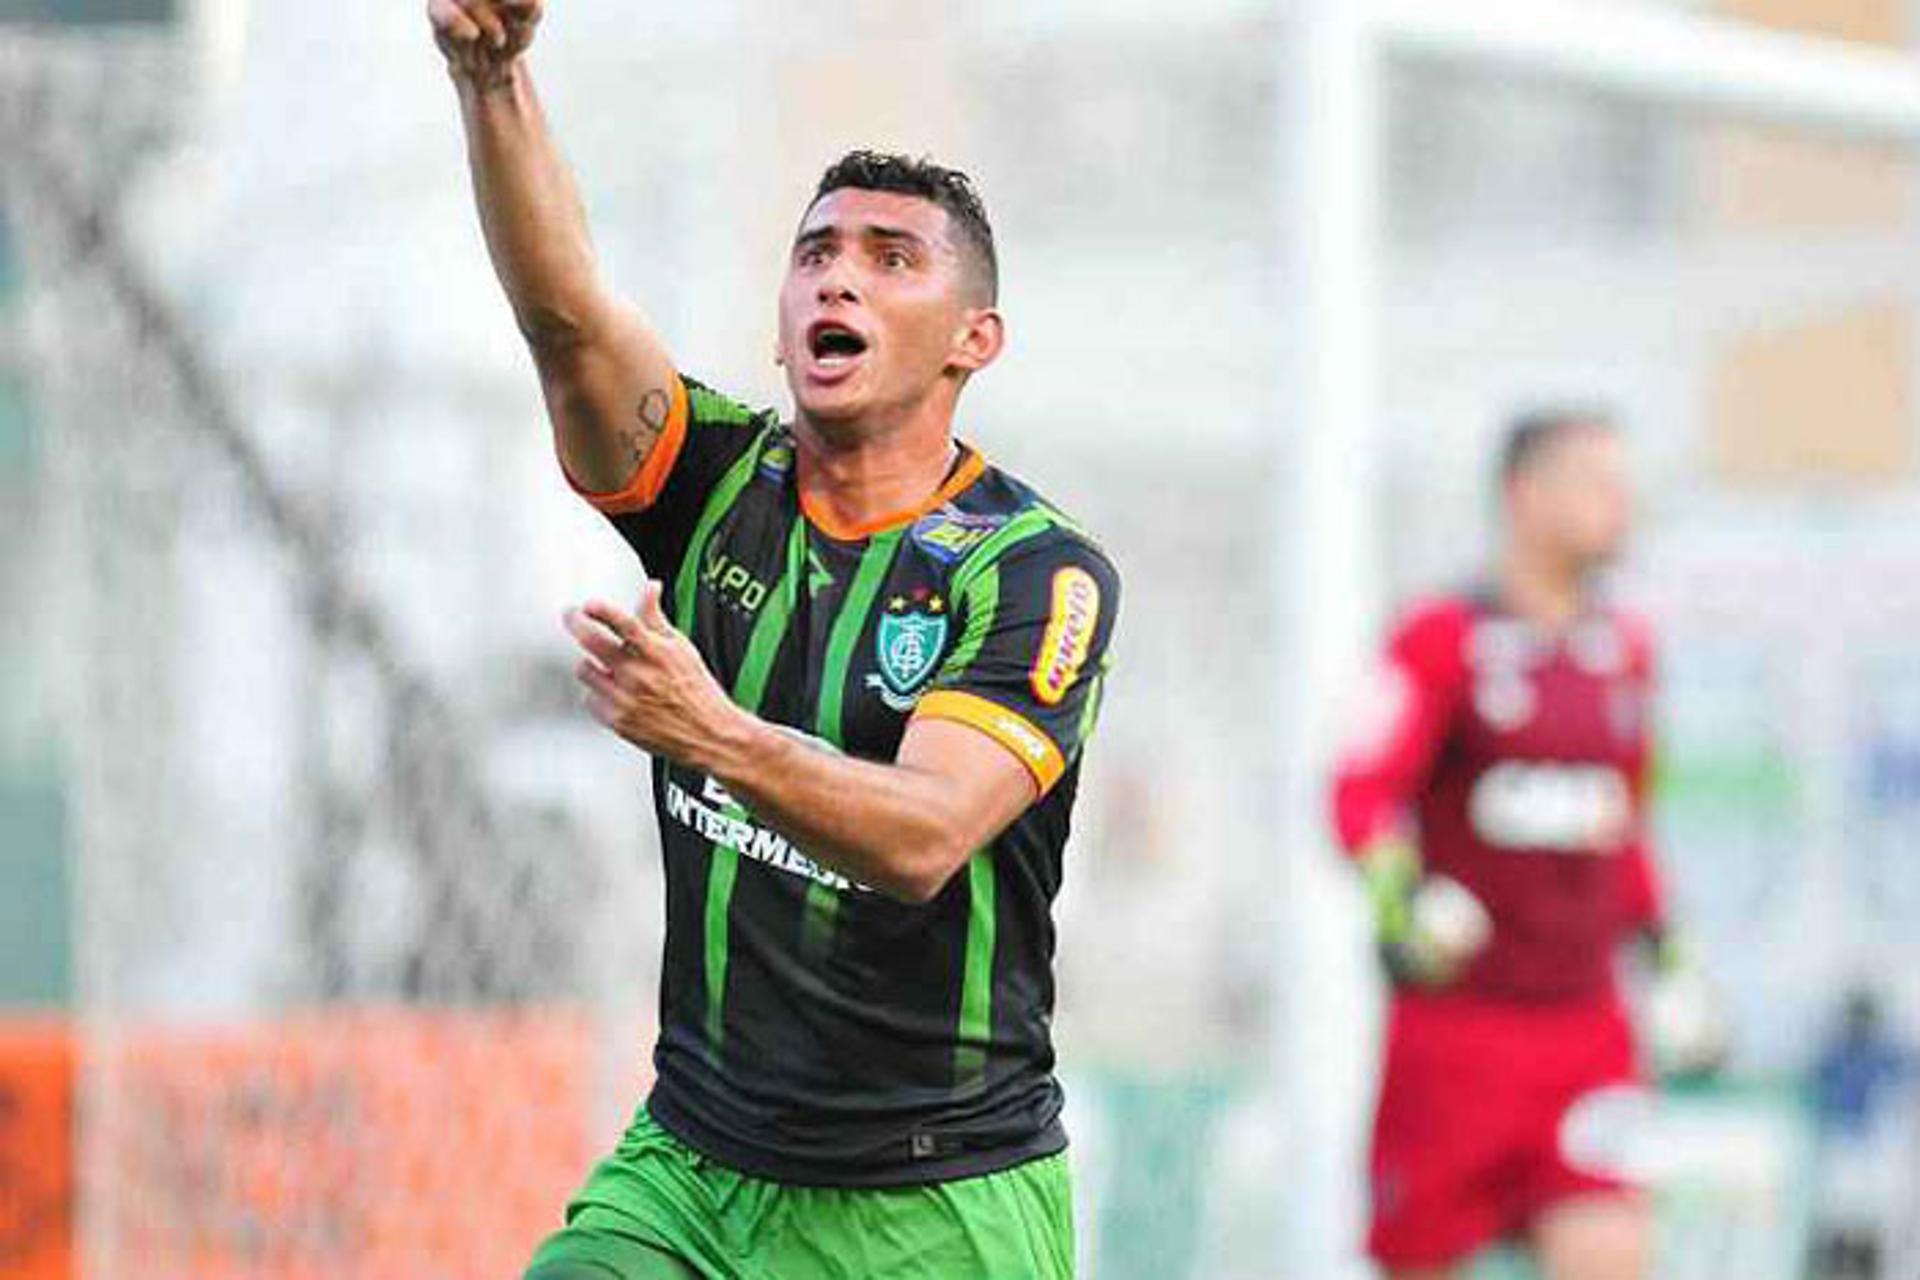 América-MG - Danilo Barcelos - 9 gols